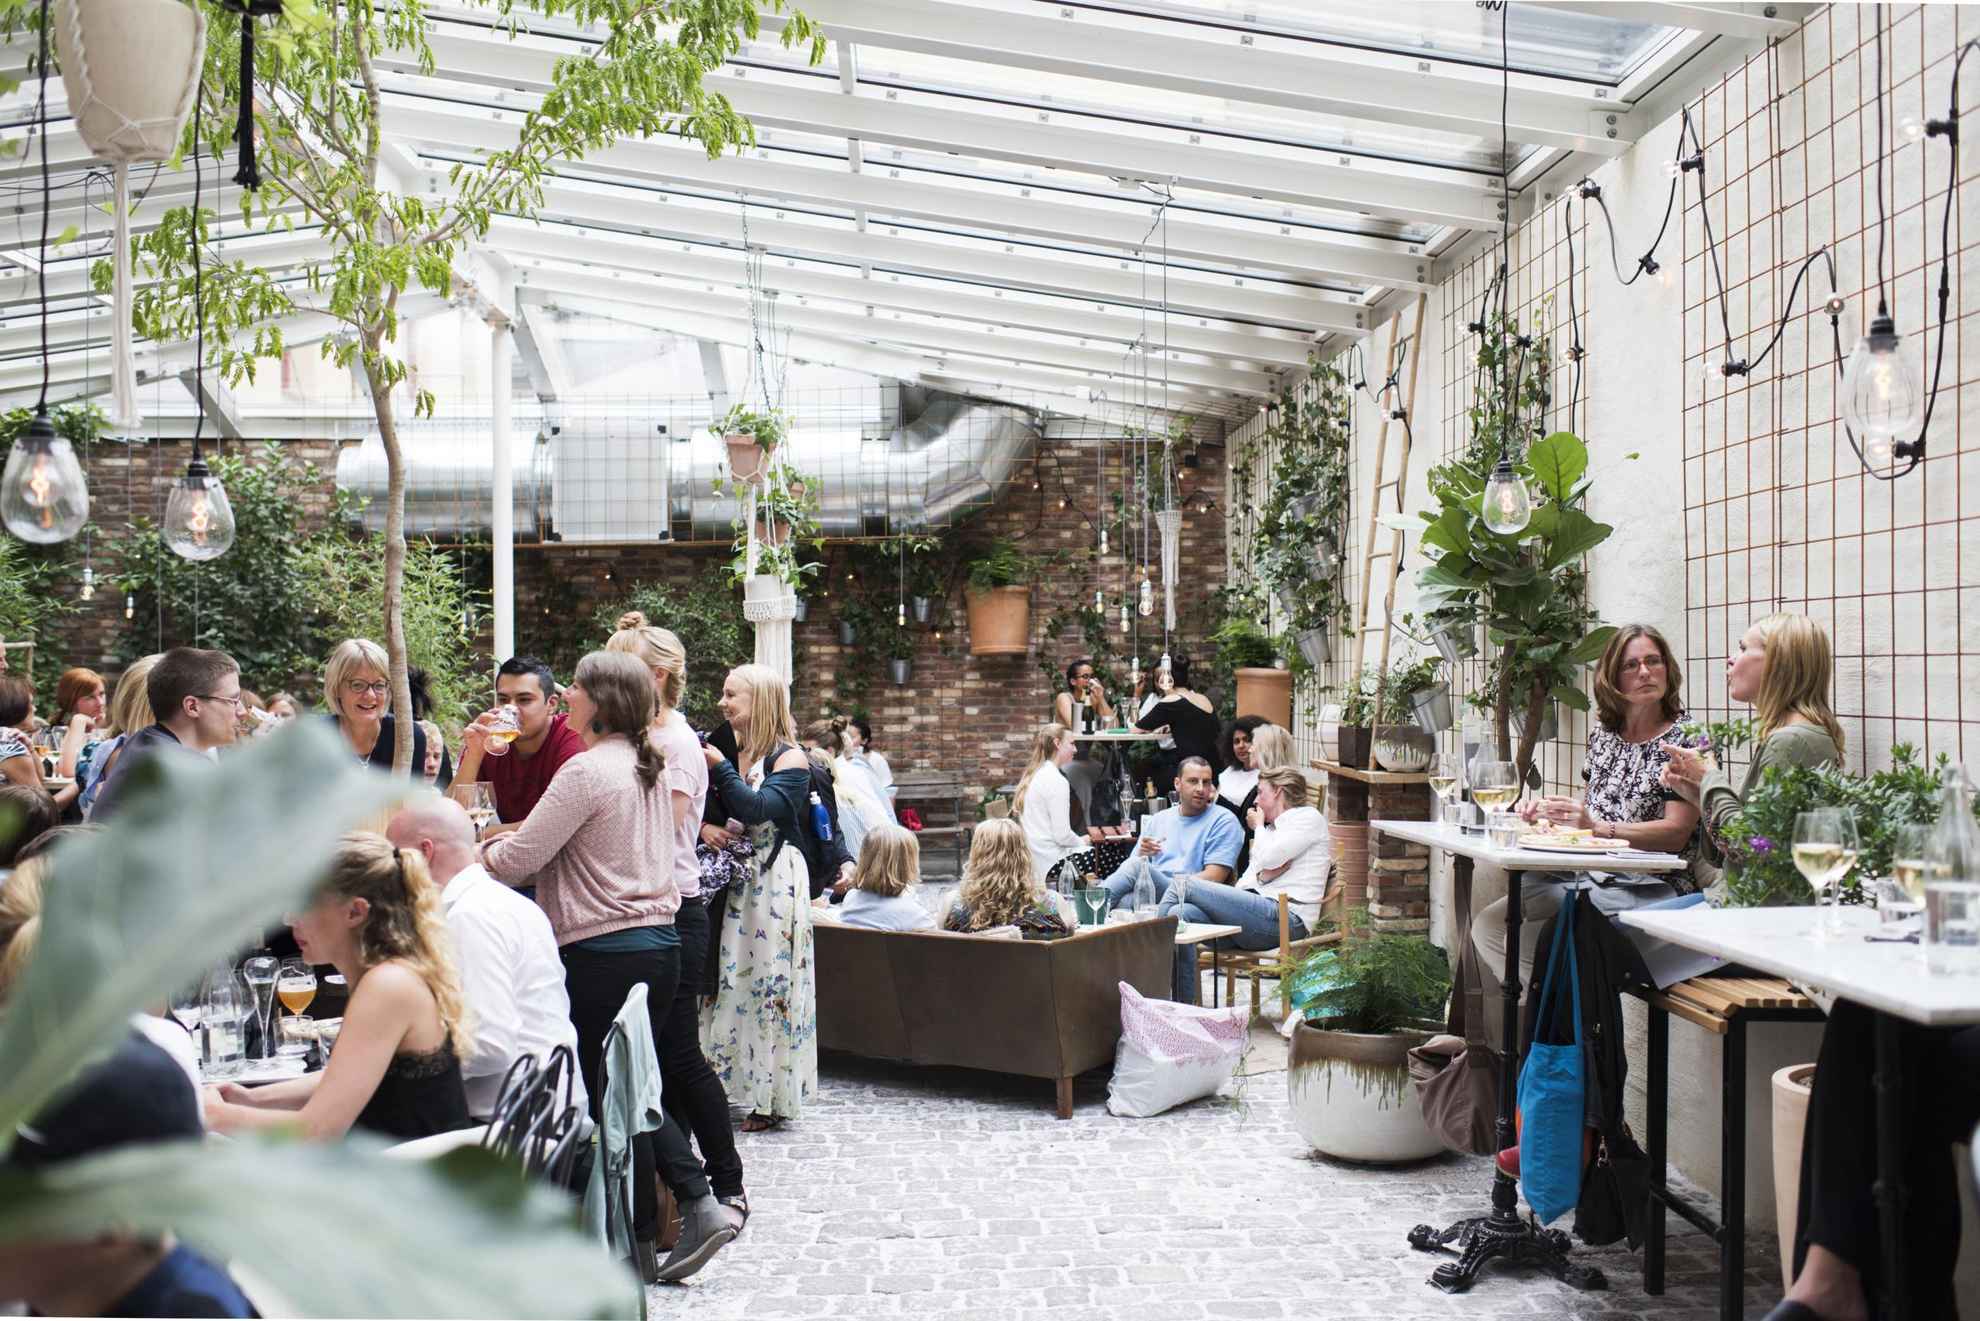 Menschen genießen Getränke und Speisen in dem belebten Café Magasinet in Göteborg. Der Innenraum besteht aus Steinboden, Backsteinwänden, einem Glasdach und der Raum ist voller grüner Pflanzen.